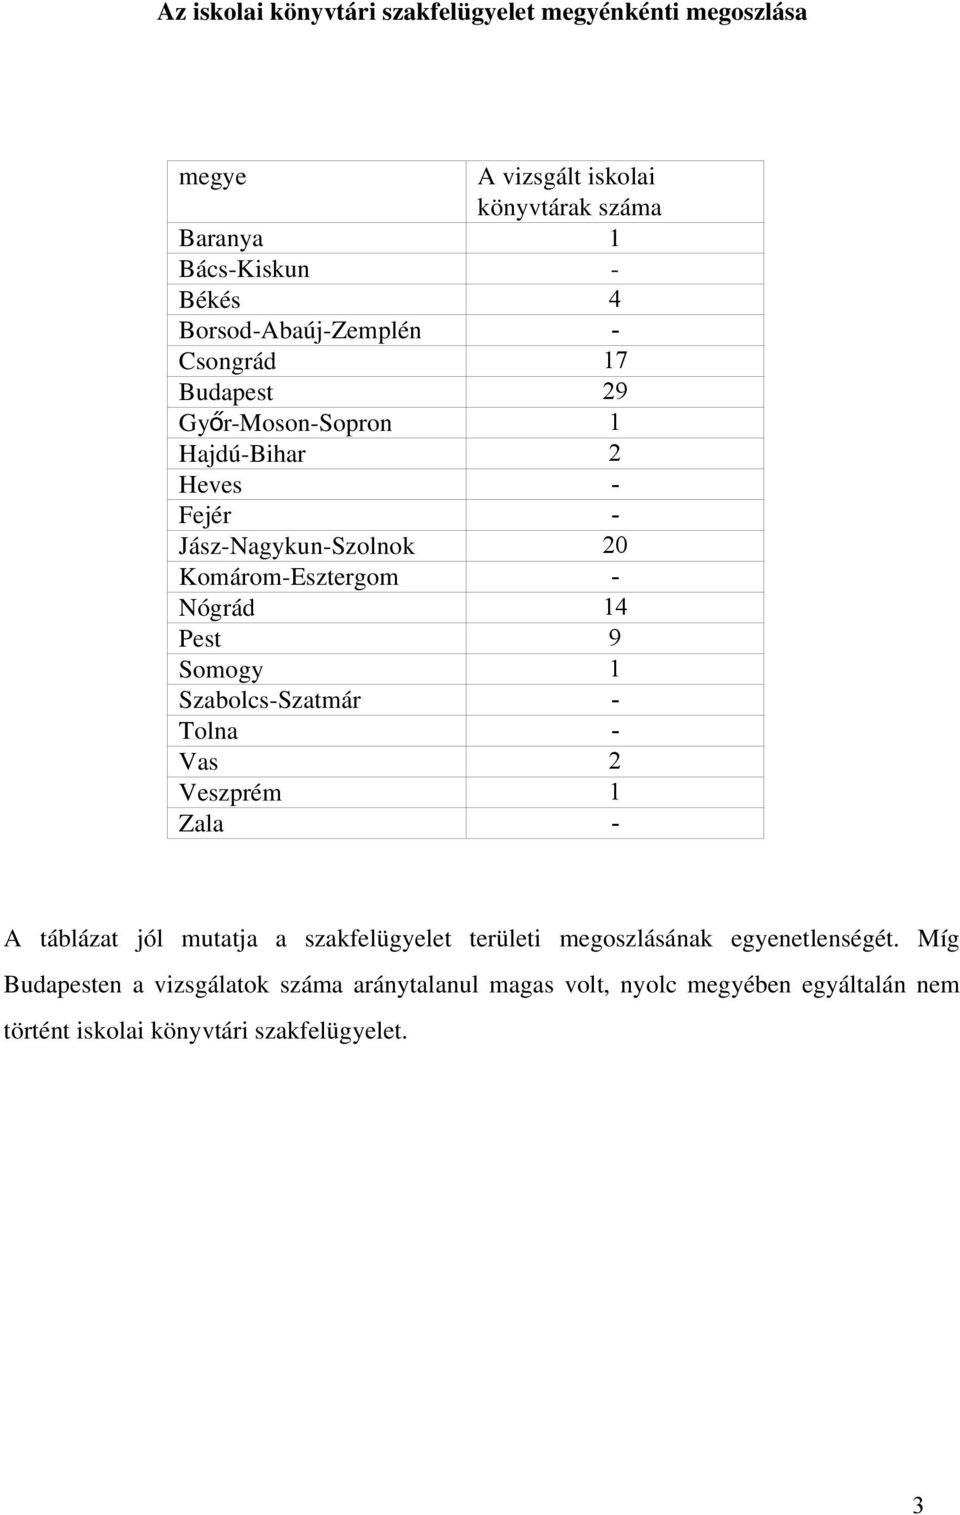 Nógrád 14 Pest 9 Somogy 1 Szabolcs-Szatmár - Tolna - Vas 2 Veszprém 1 Zala - A táblázat jól mutatja a szakfelügyelet területi megoszlásának